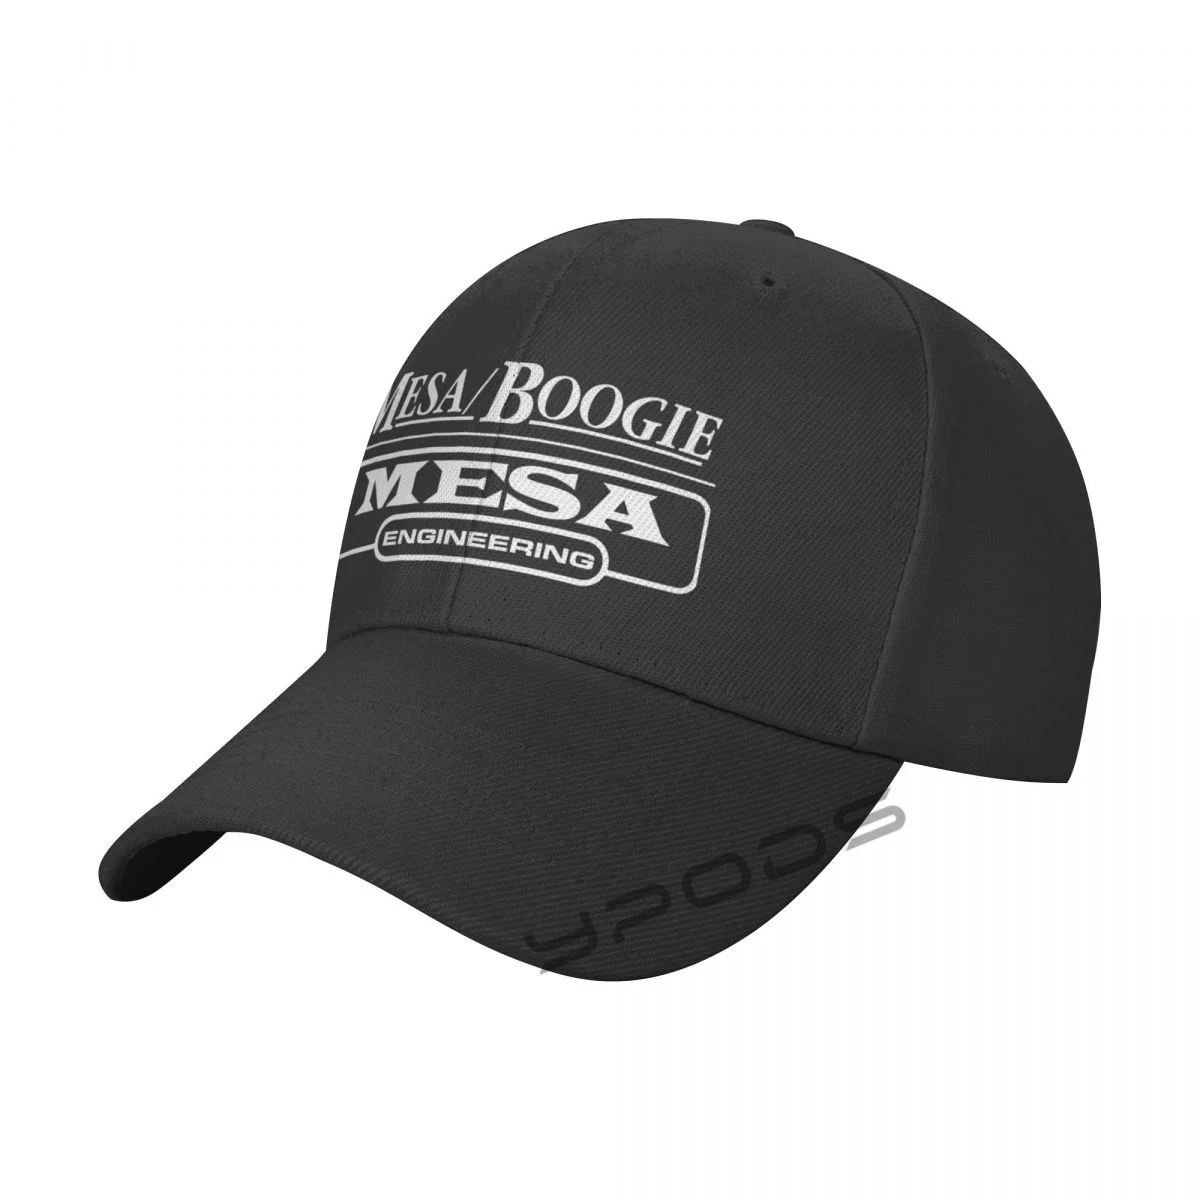 

Mesa-Boogie New Baseball Caps for Men Cap Women Hat Snapback Casual Cap Casquette hats